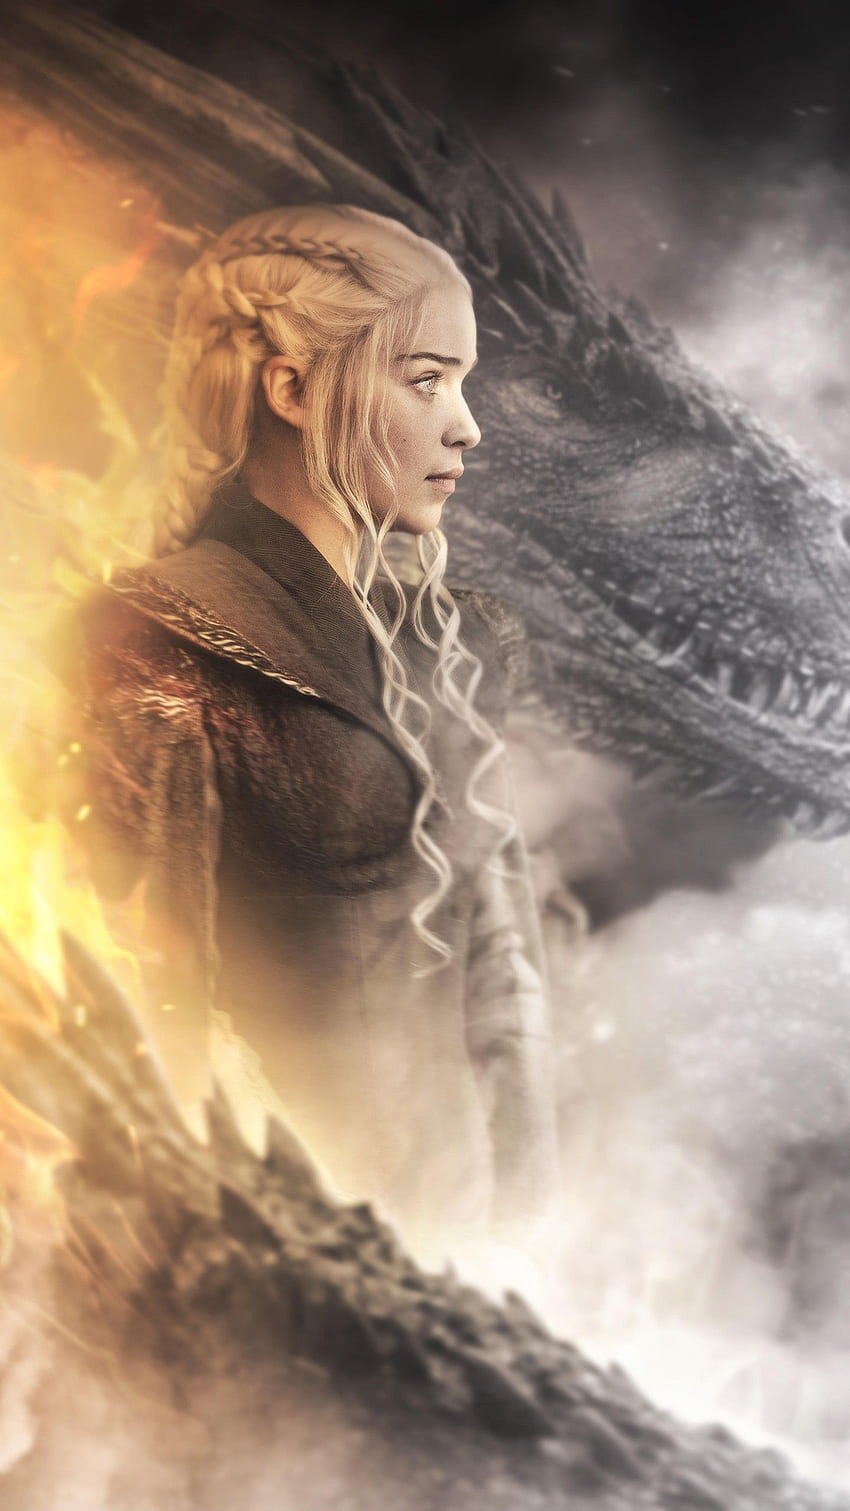 Daenerys Targaryen Dragón En Juego De Tronos - Daenerys Targaryen Android, Dany Juego De Tronos fondo de pantalla del teléfono